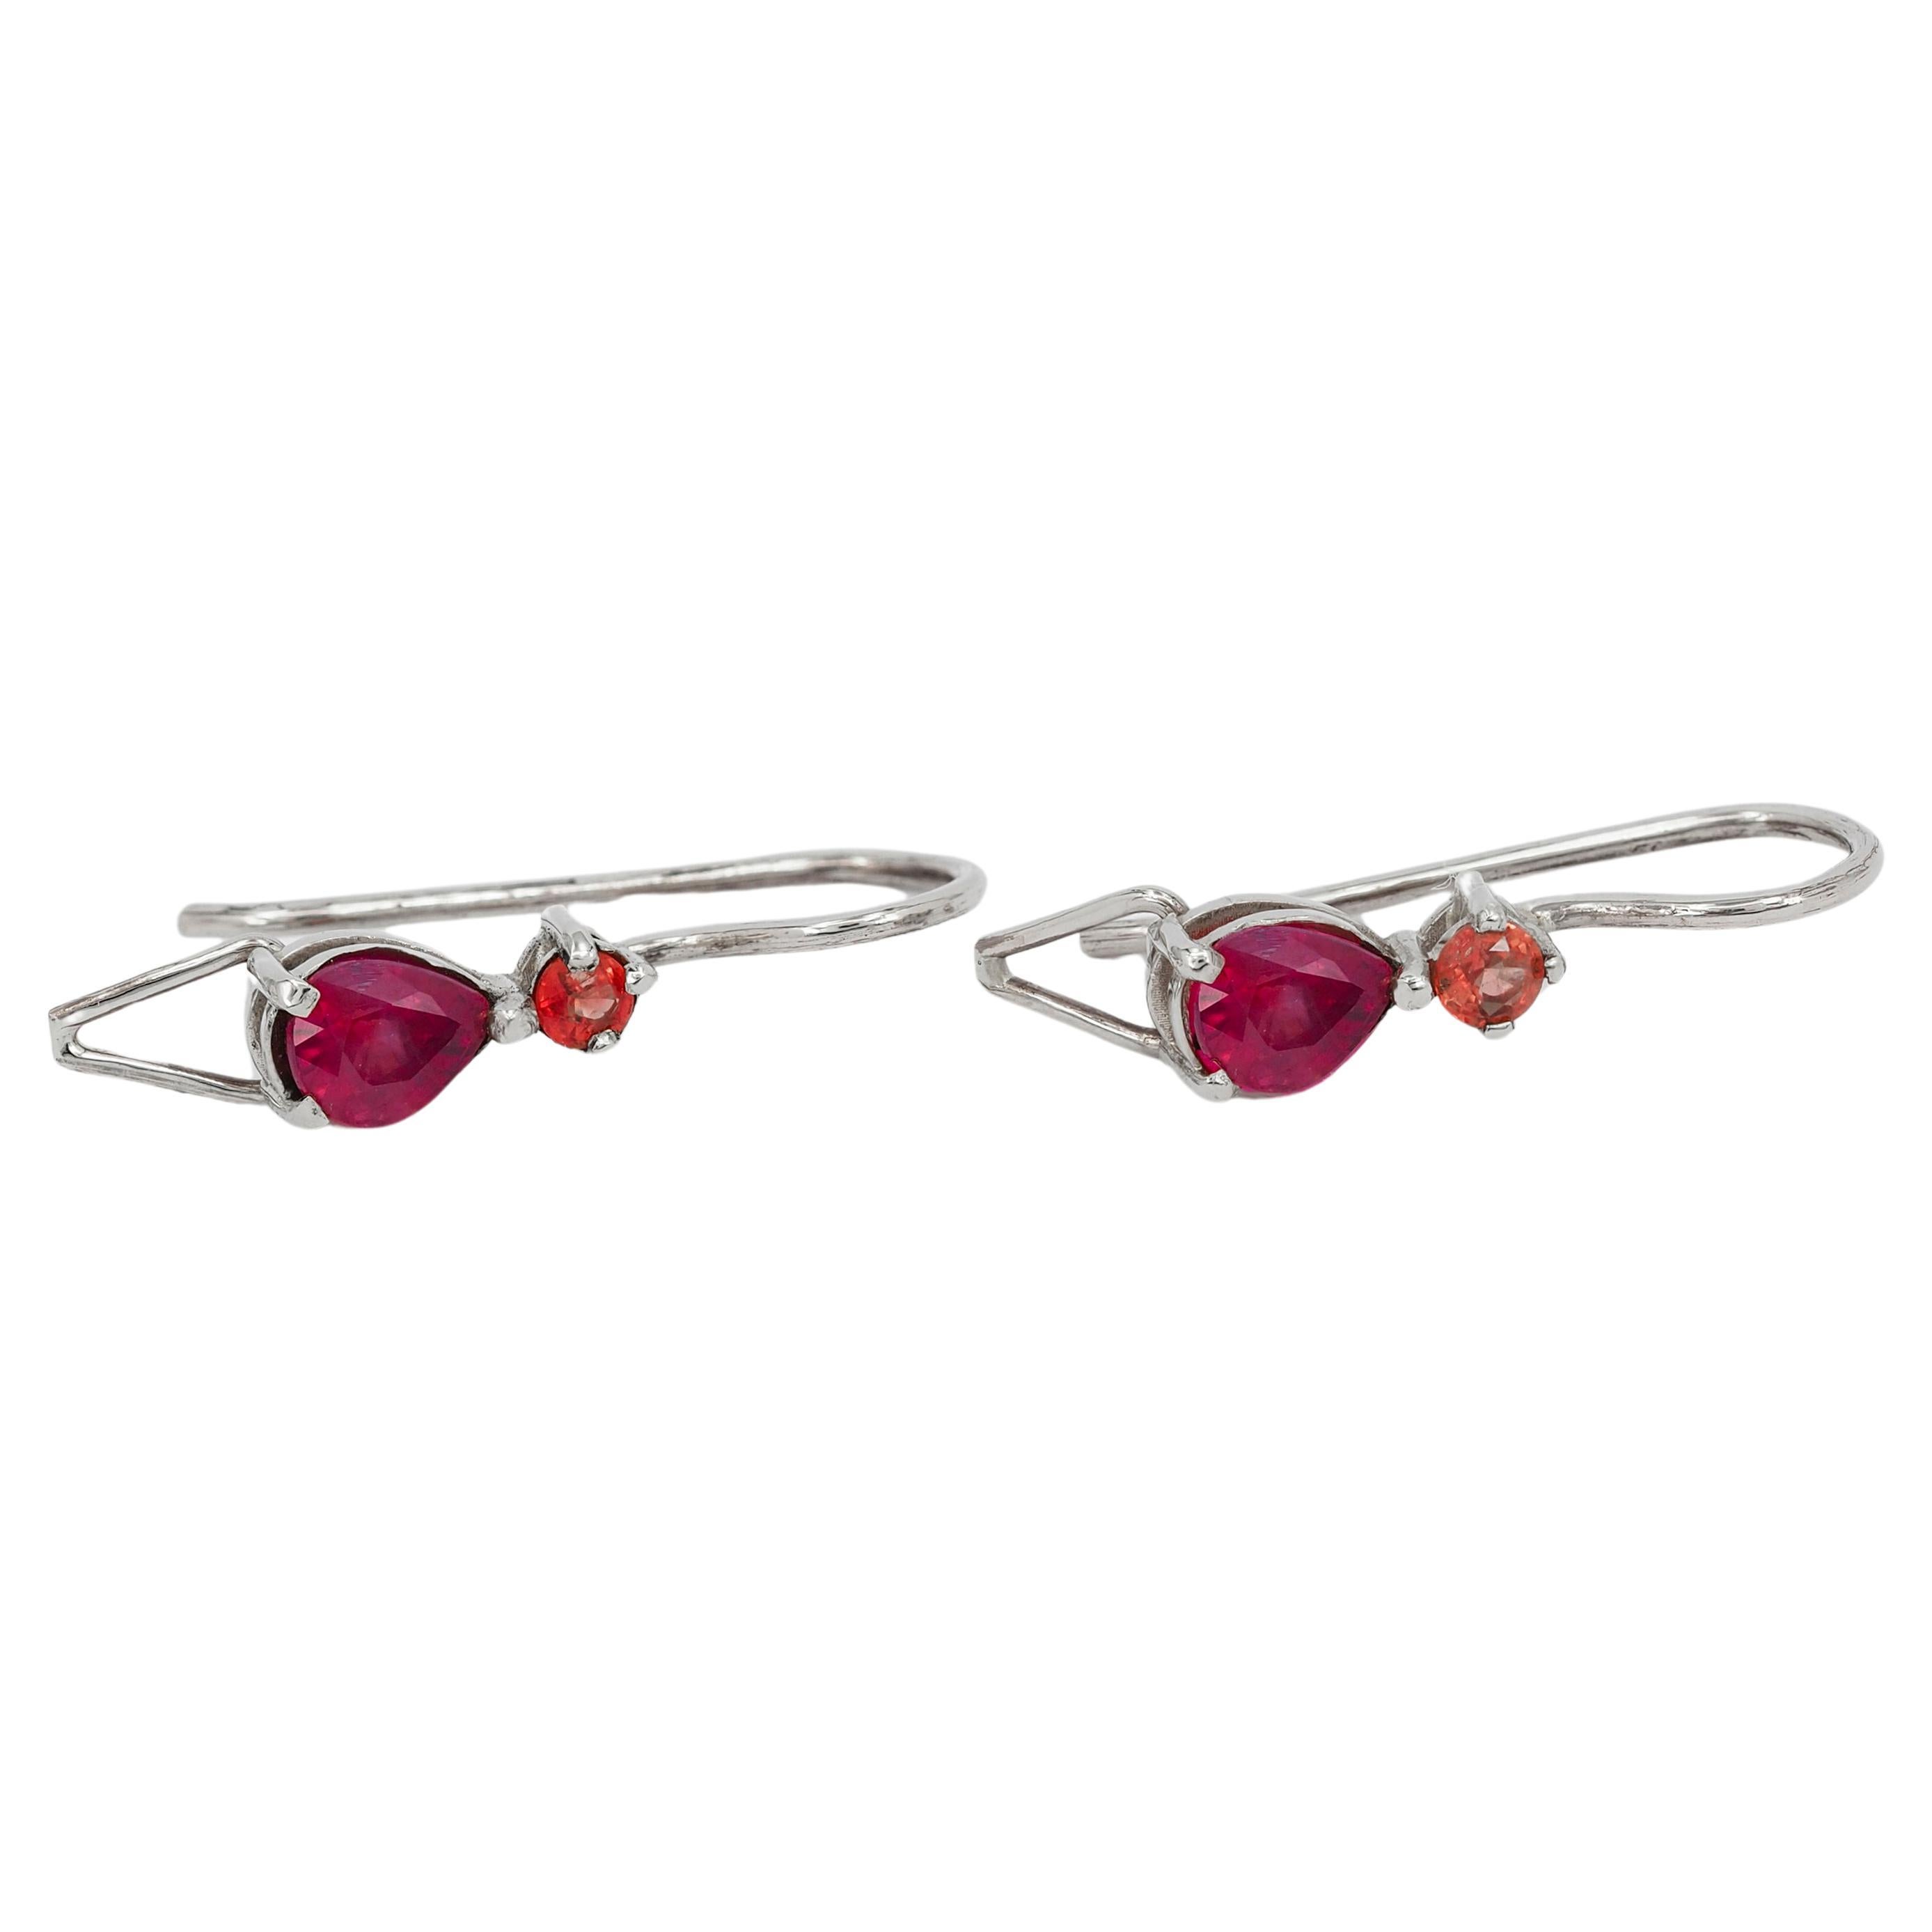 Genuine 1 ct rubies and sapphires earrings. 